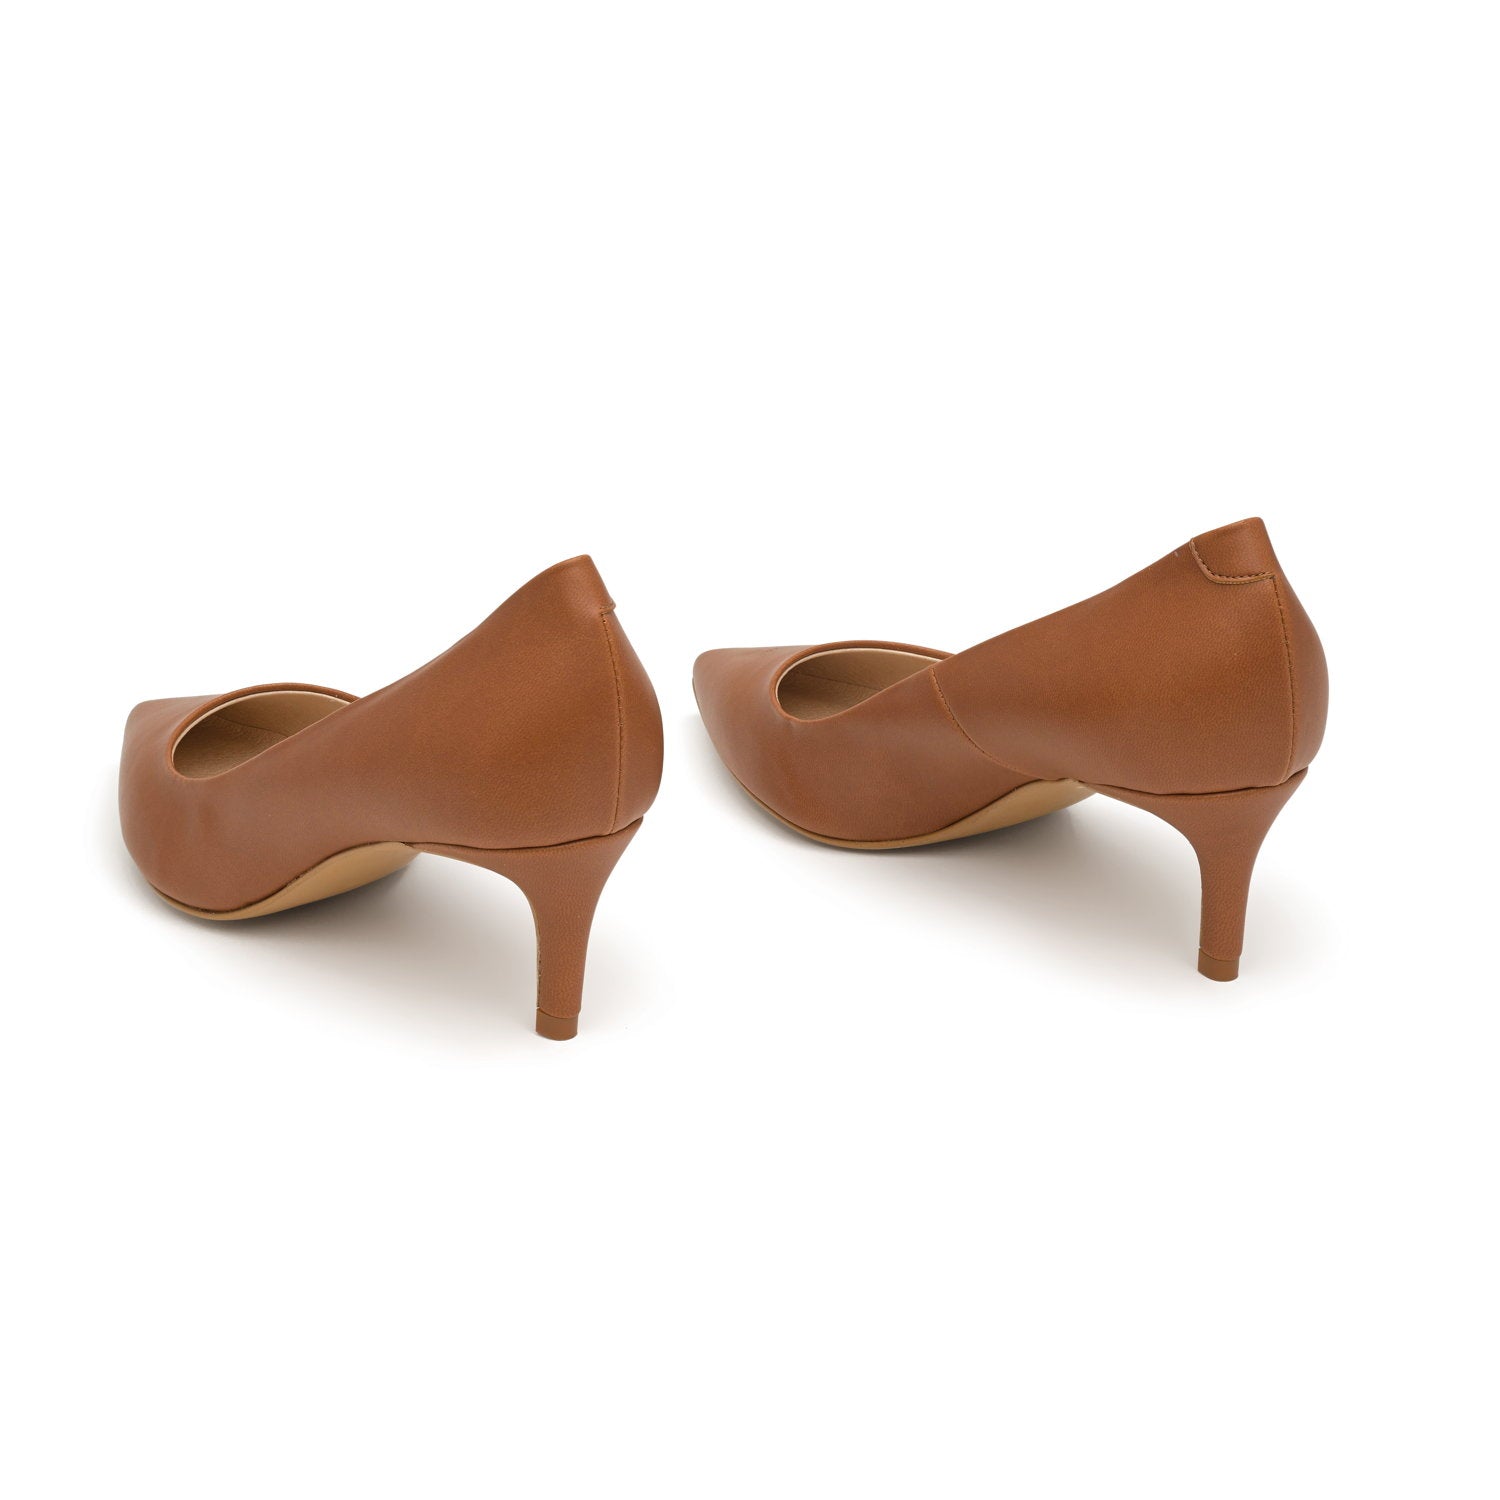 The Brown - vegan 50mm heels